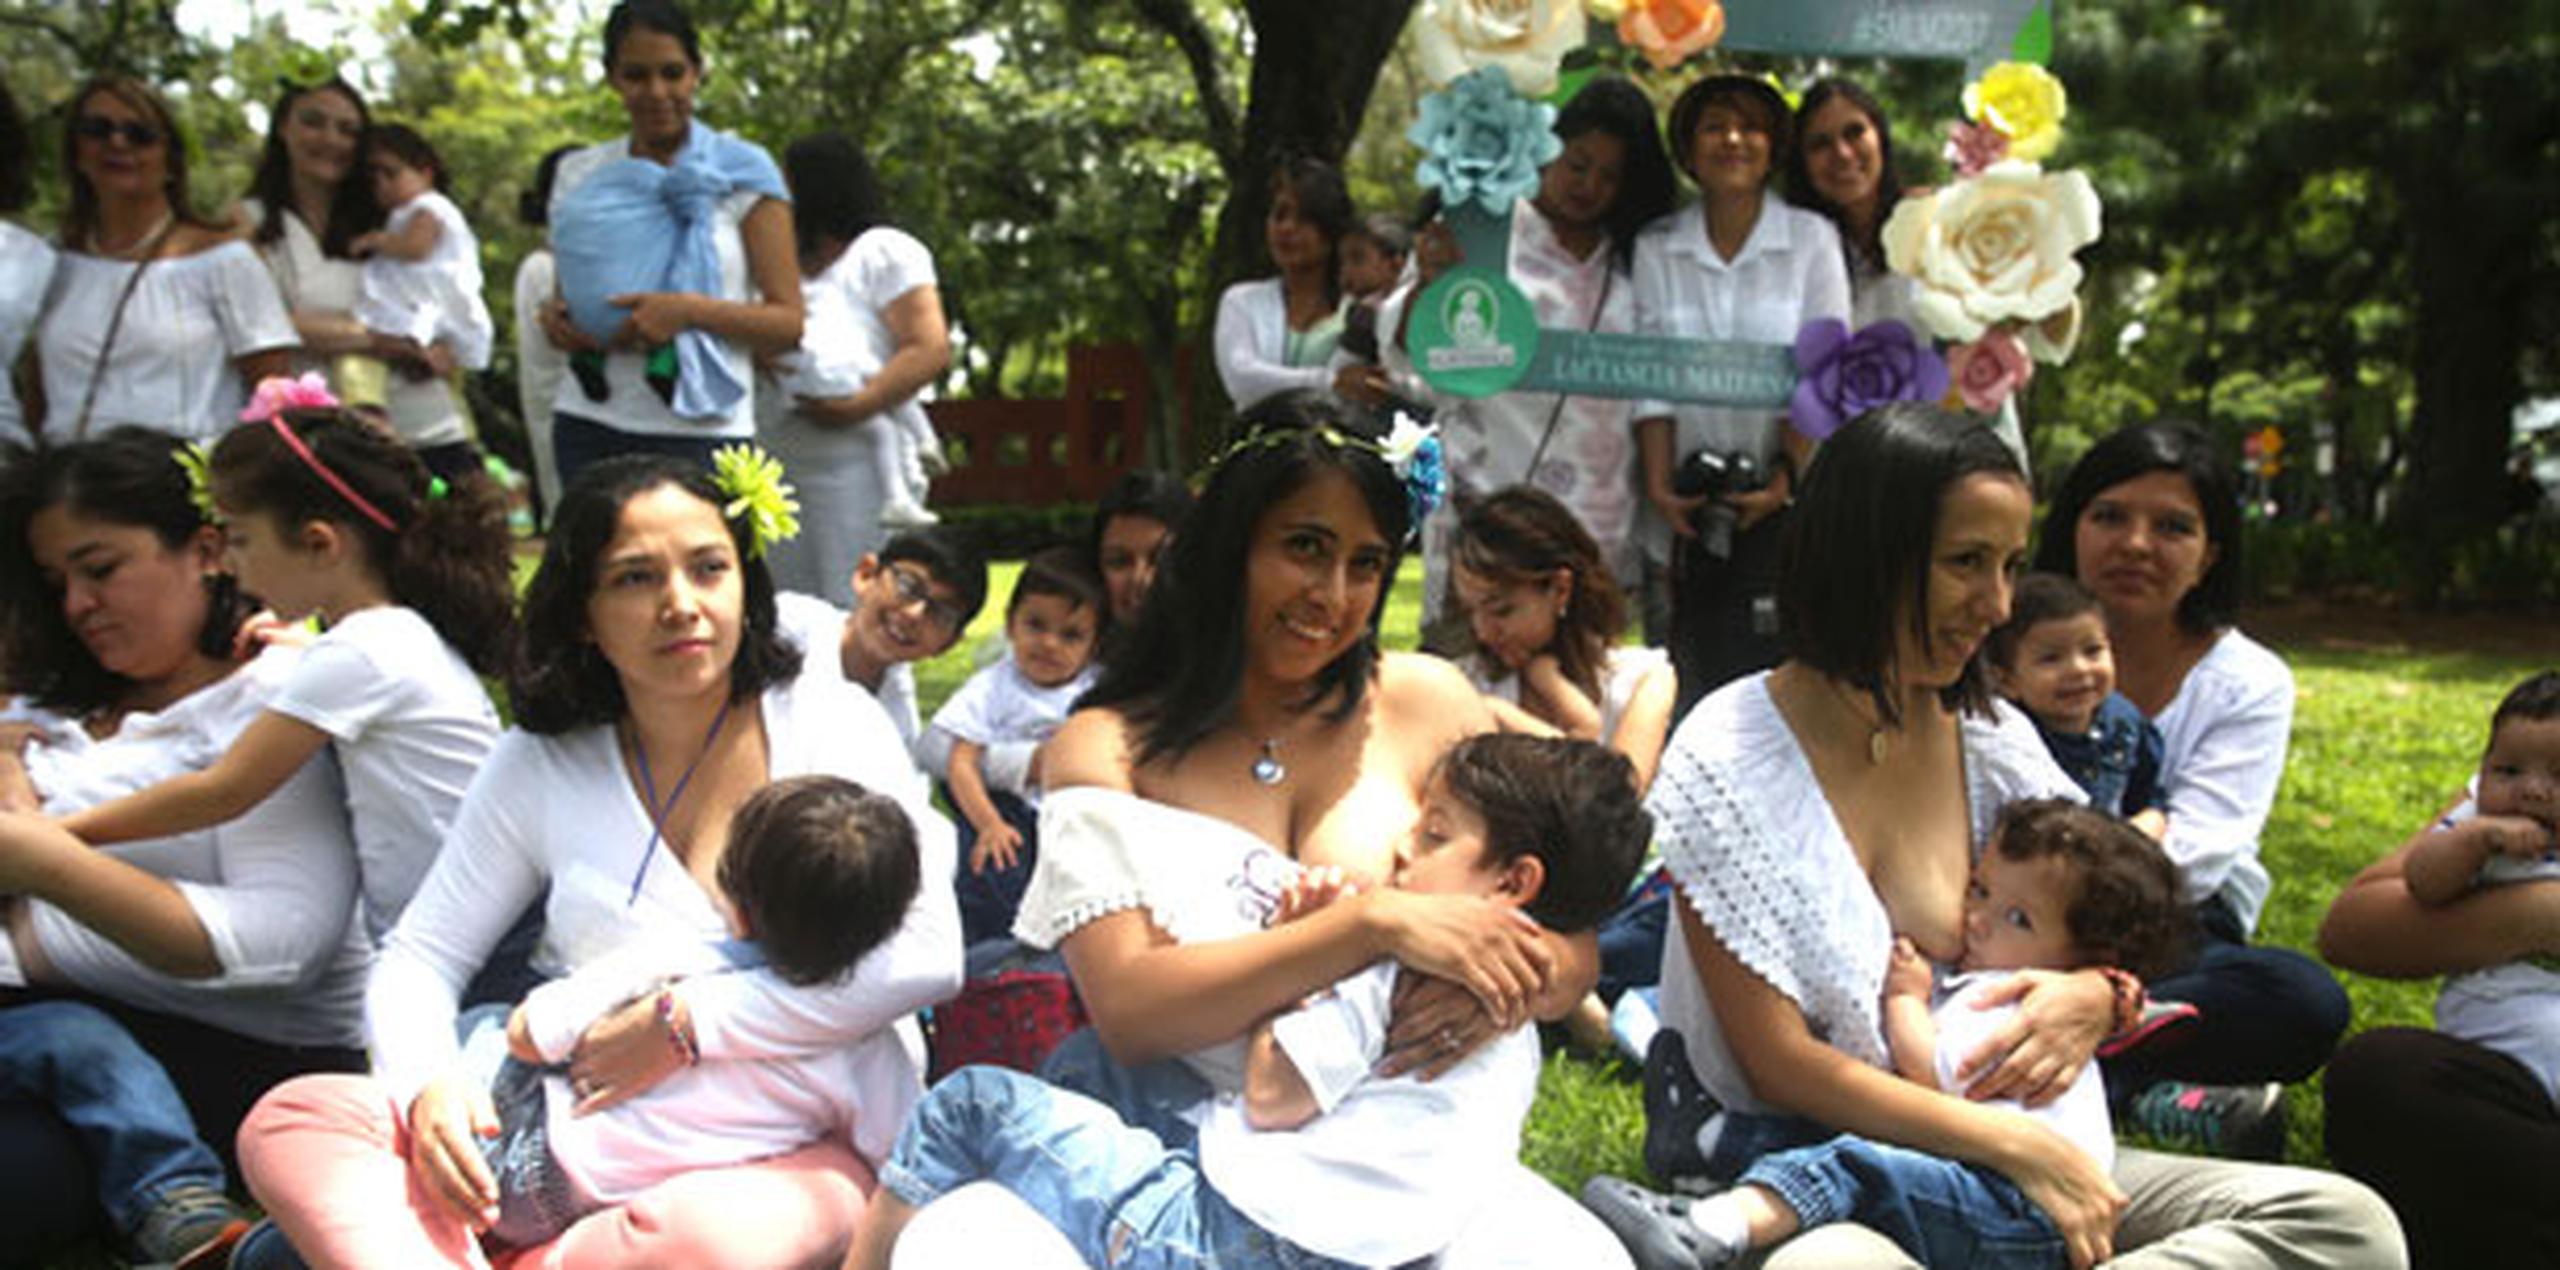 Con el objetivo de fomentar la tolerancia y respeto al derecho que tiene tanto la madre como el bebé de realizar este ejercicio sin ser sometidos al acoso social, Guatemala seguirá acogiendo "tetadas" masivas en años venideros. (EFE)